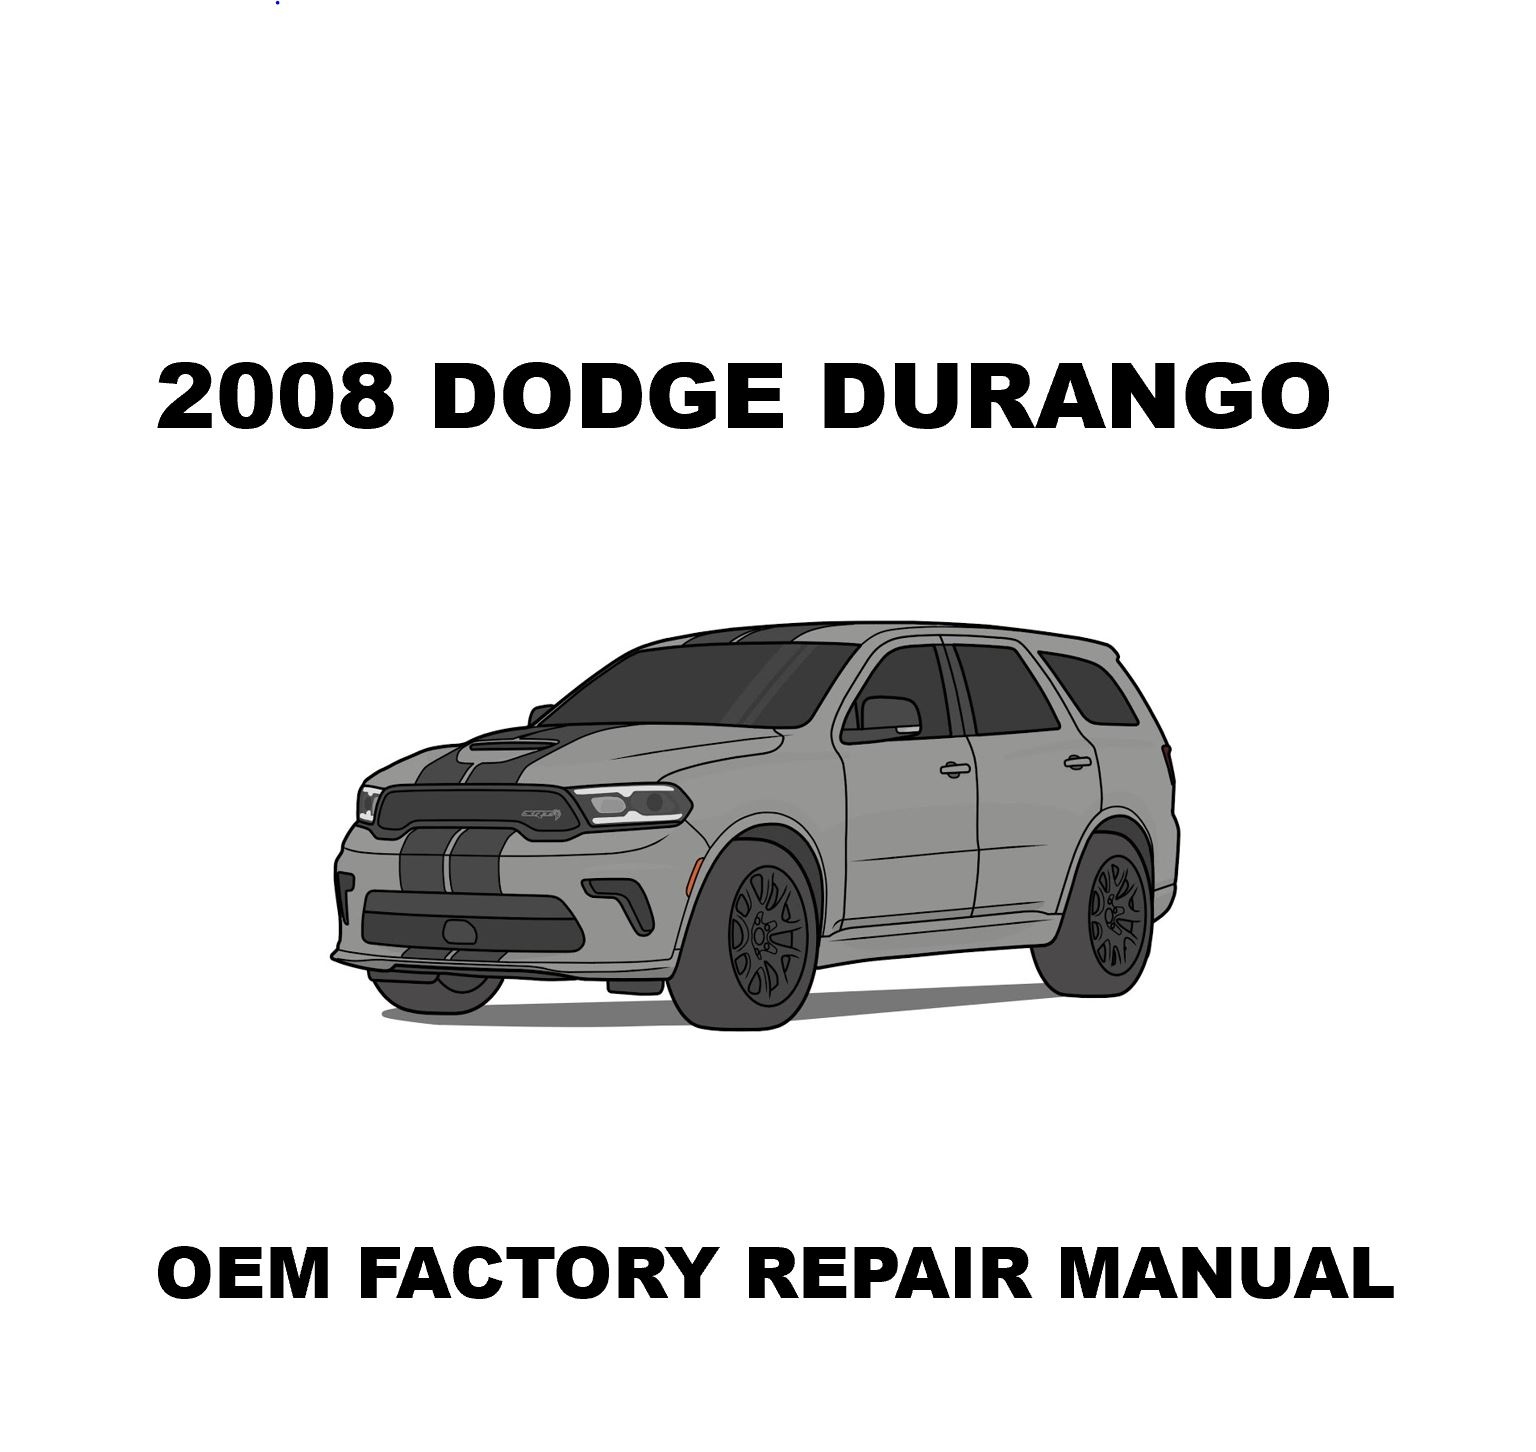 2008_dodge_durango_repair_manual_1536